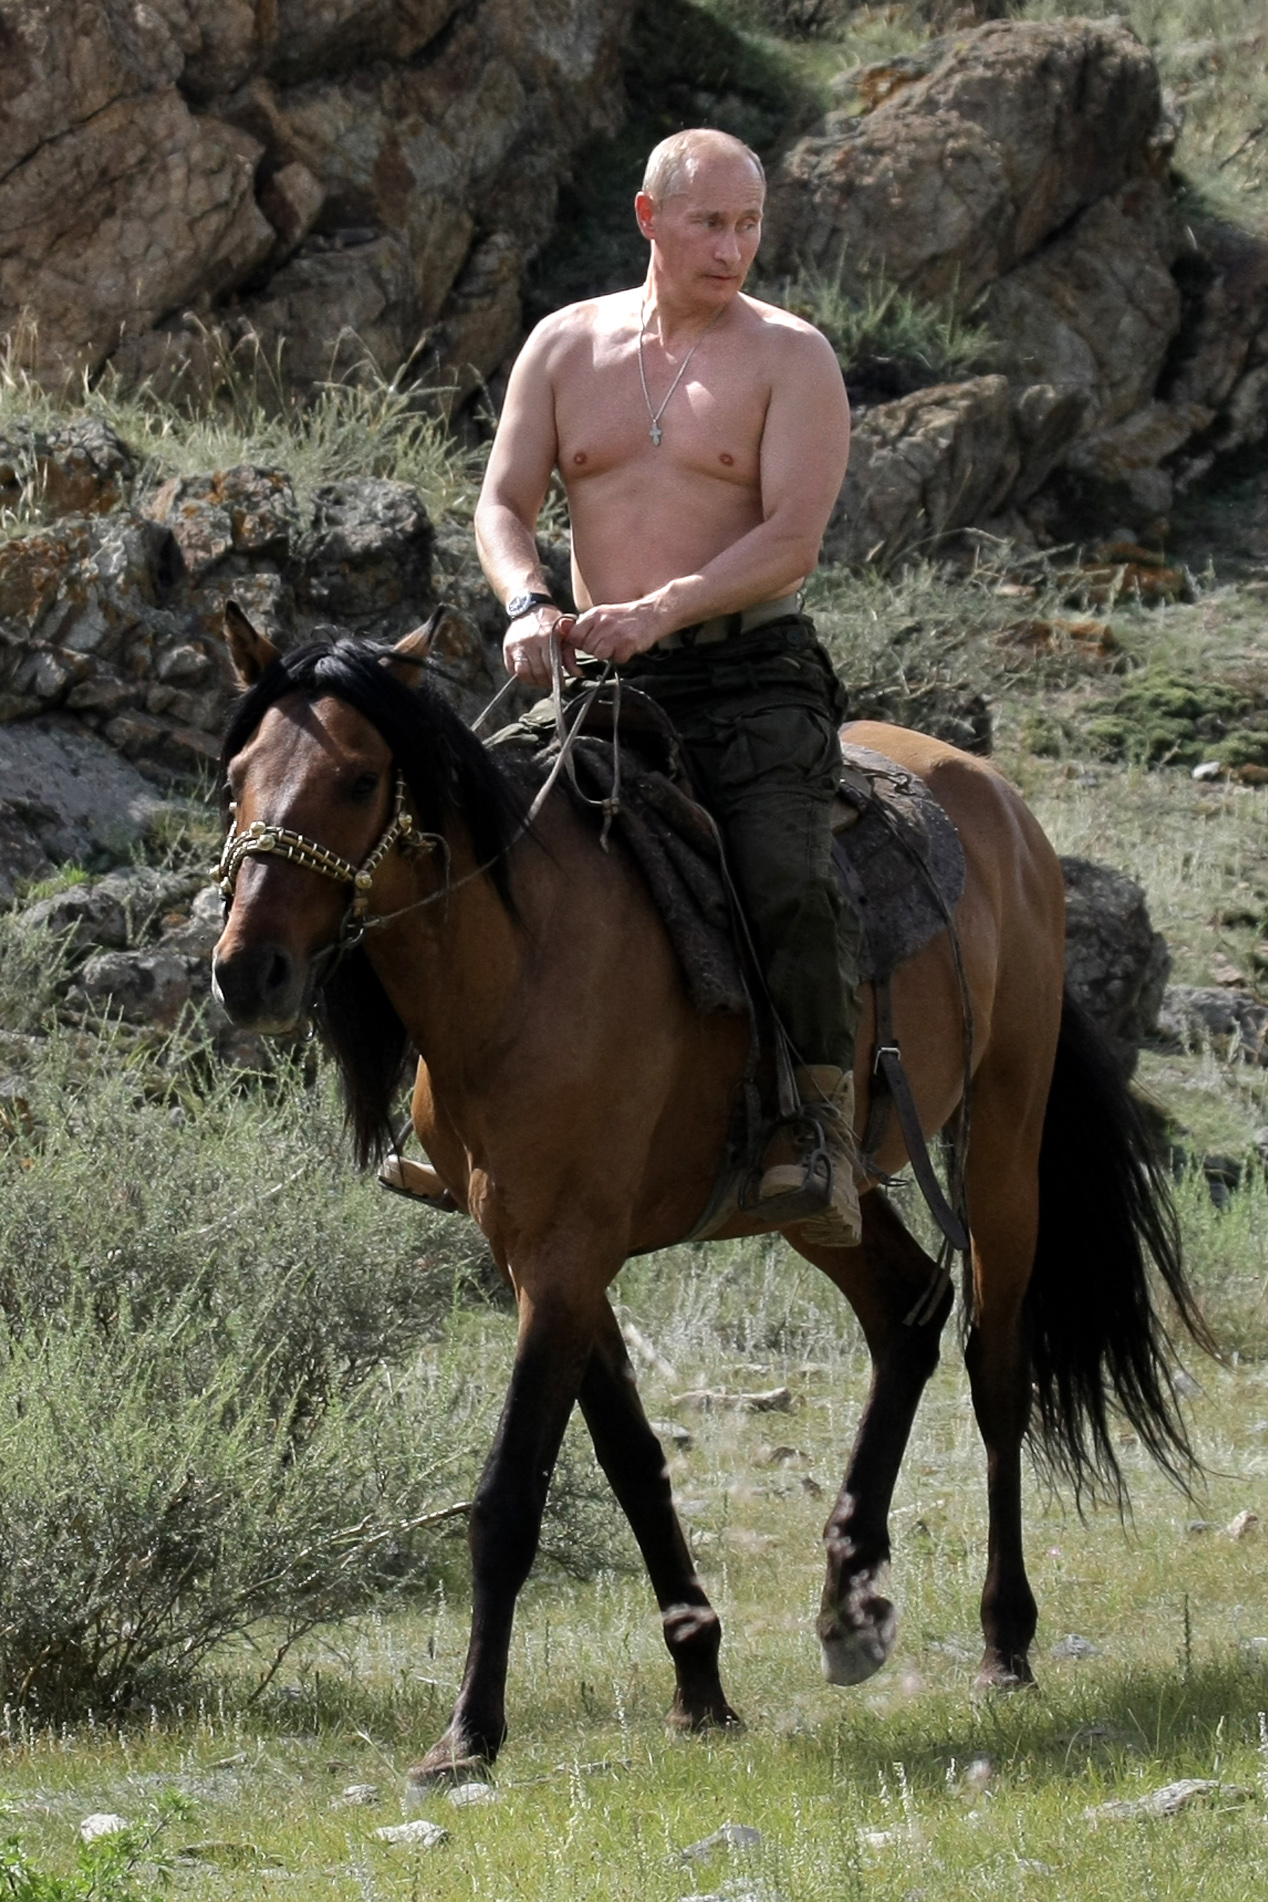 Putin geht hart gegen Nacktheit und Ausschweifungen vor, obwohl er selbst oben ohne ist